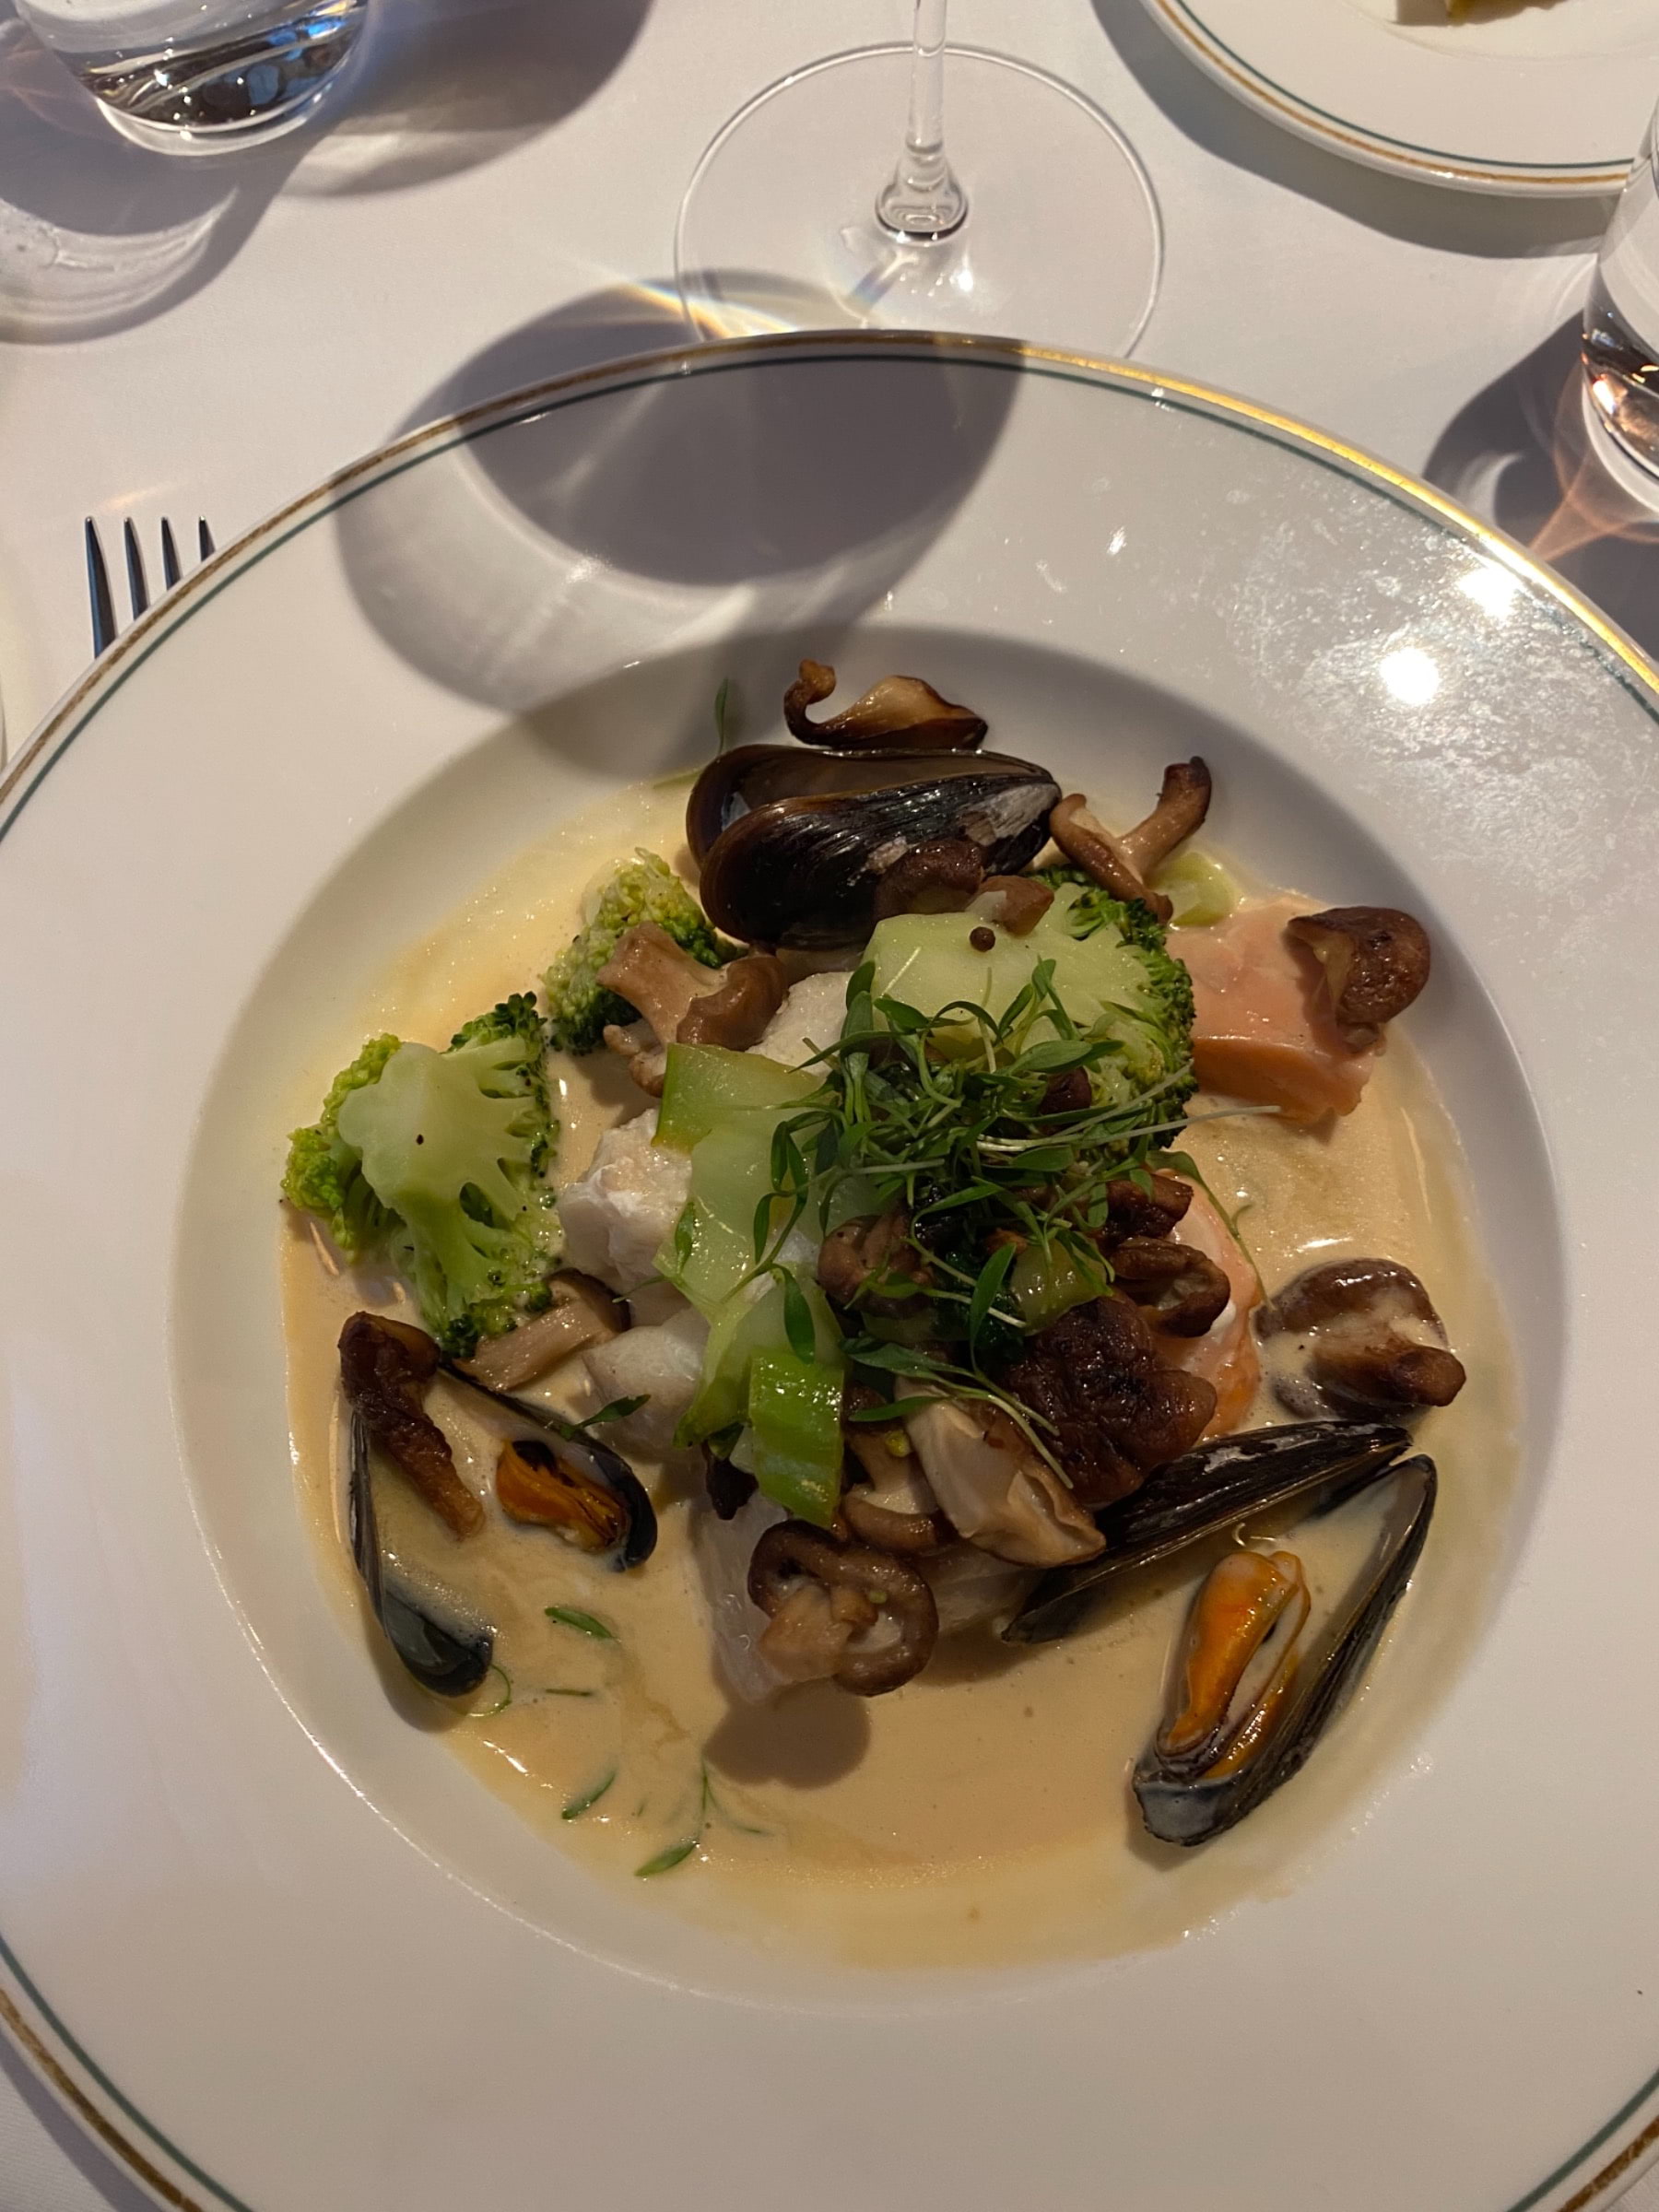 Dagens fisksoppa med torsk, lax, musslor och broccoli. - Bild från Brasserie Astoria av Sofie L.